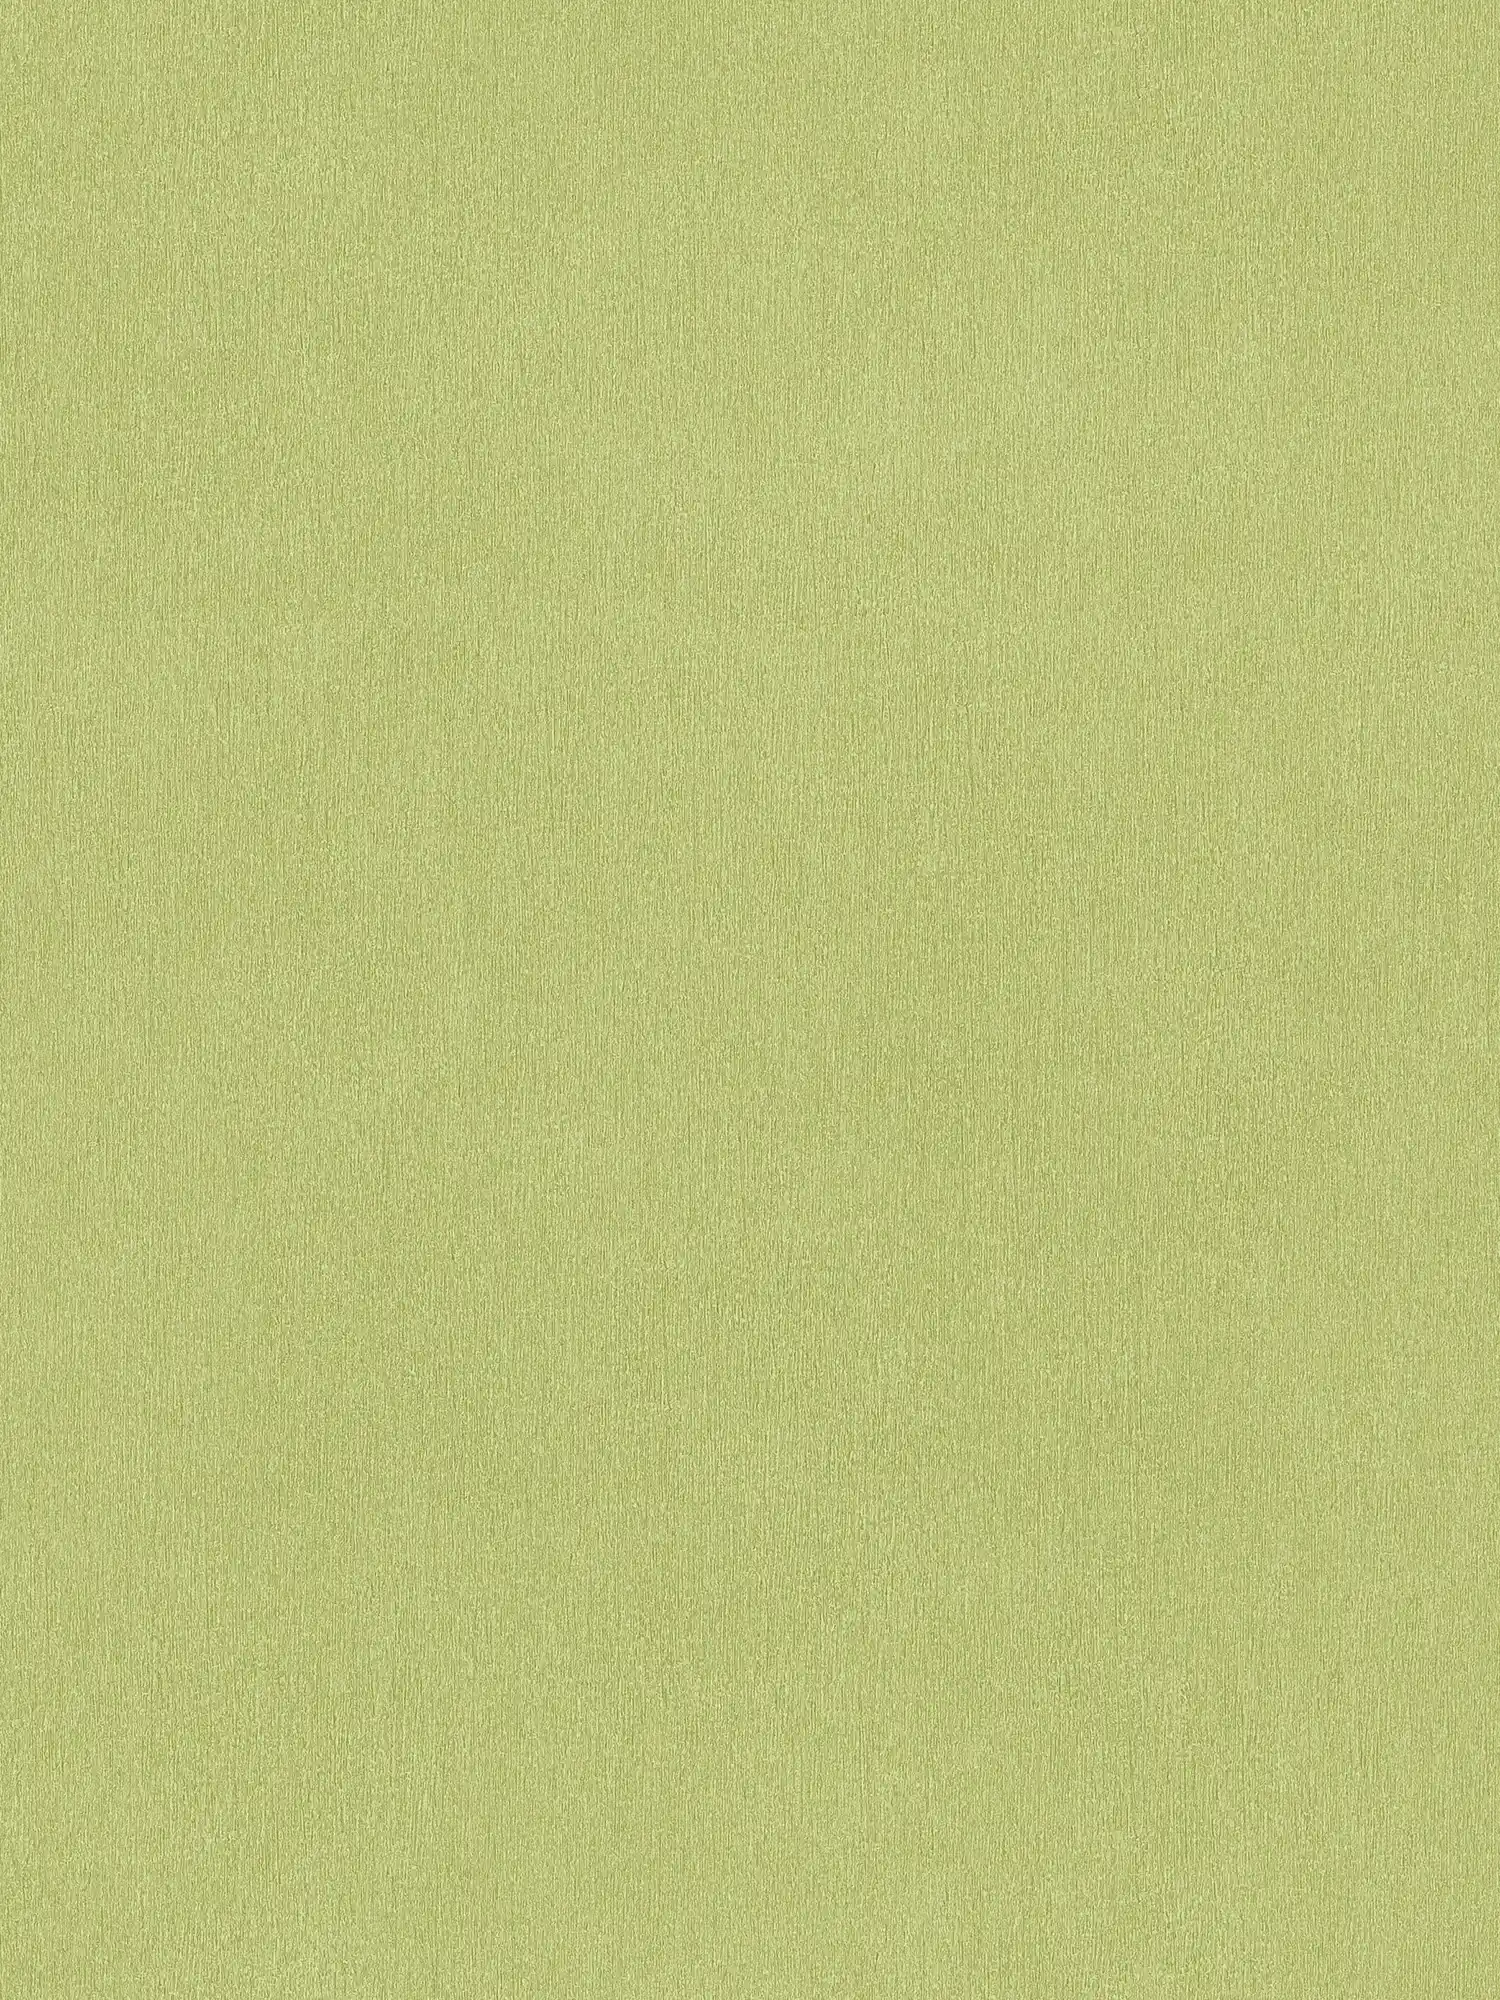 Carta da parati verde chiaro tinta unita verde lime con tratteggio a colori
